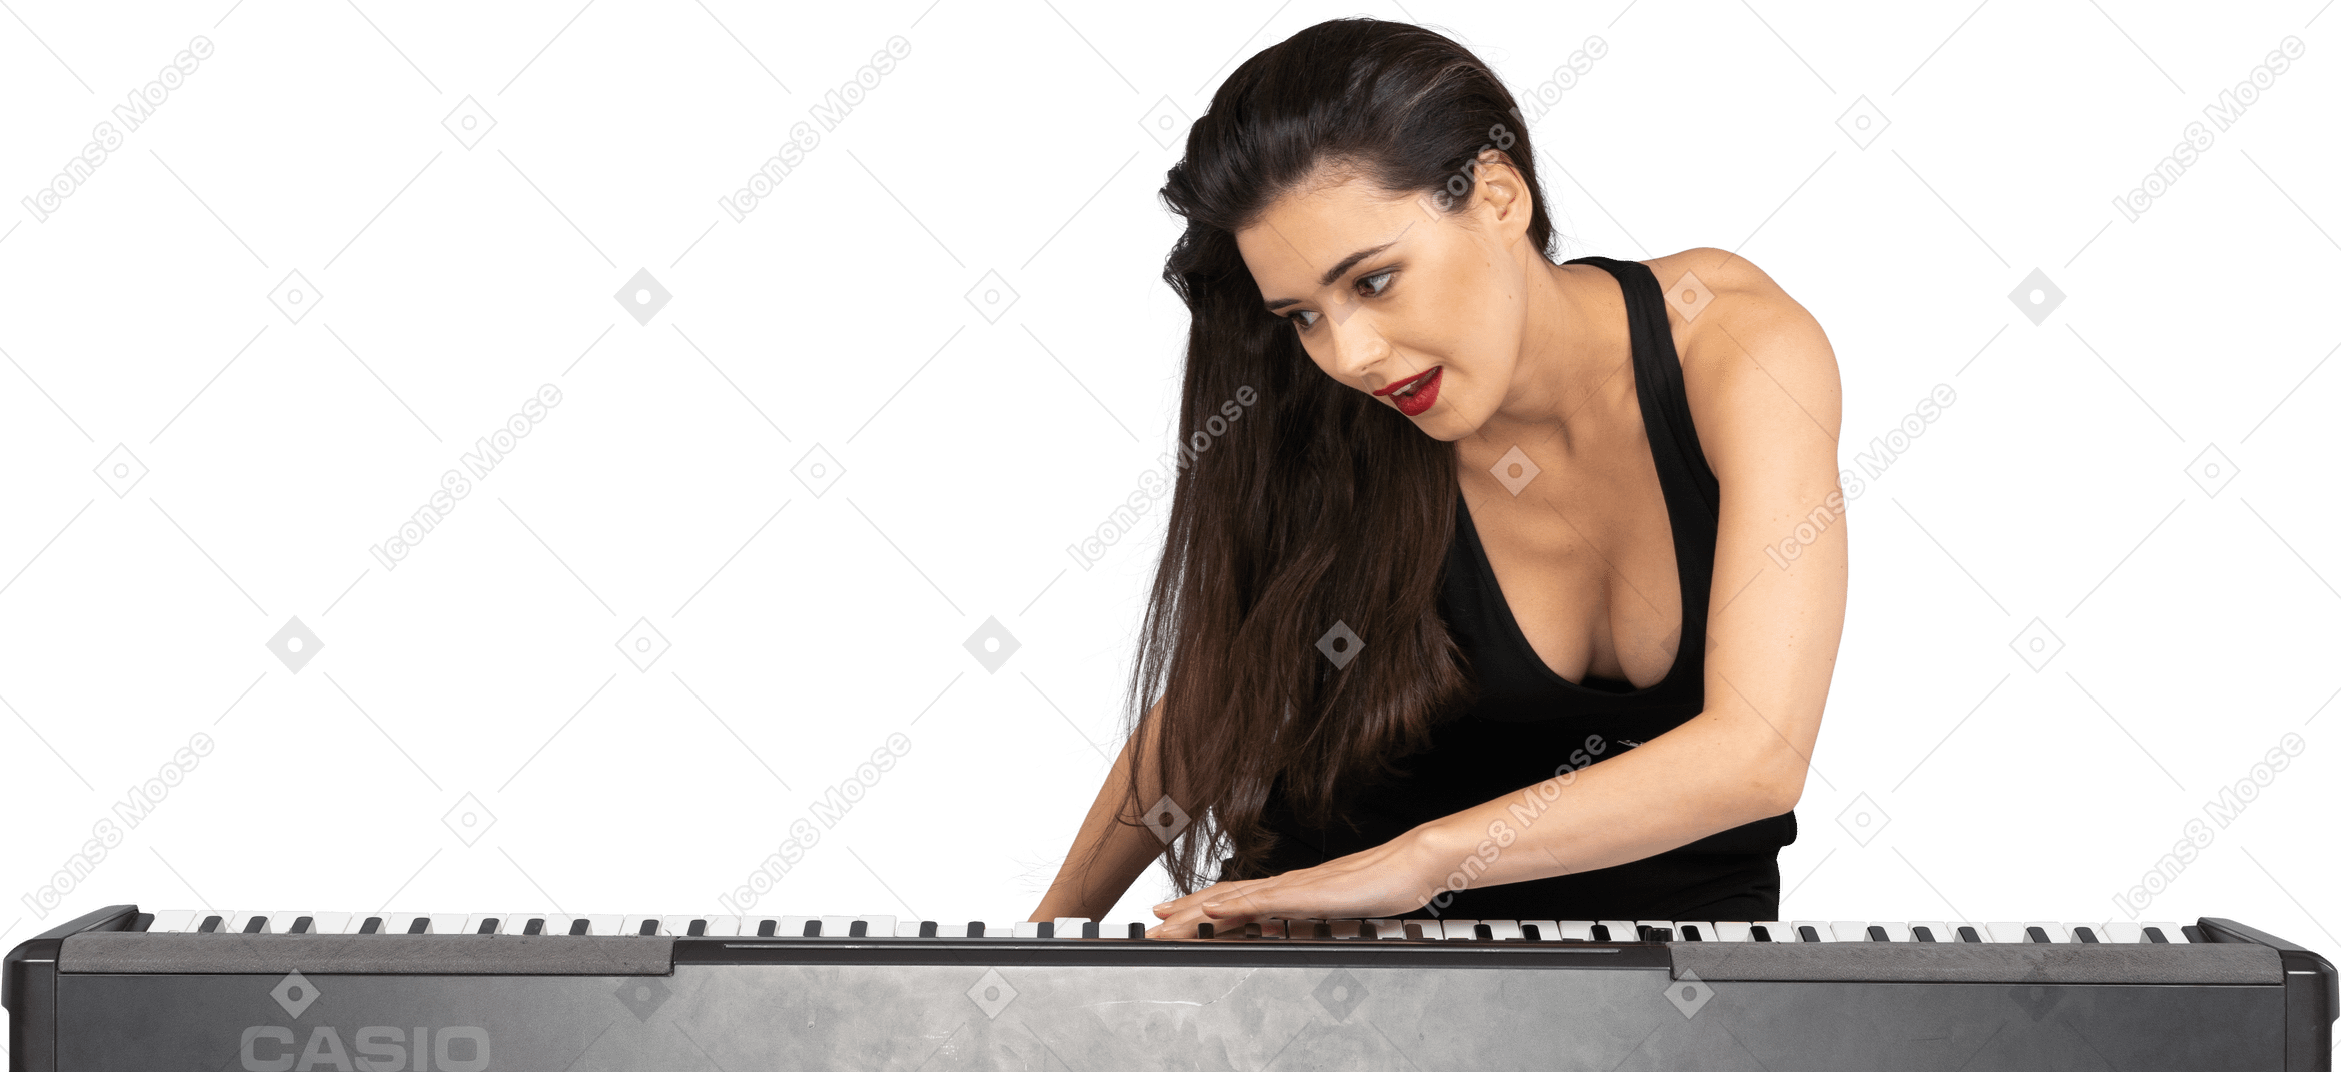 Vista frontal de una señorita vestida de negro poniendo su mano sobre el teclado e inclinándose a un lado